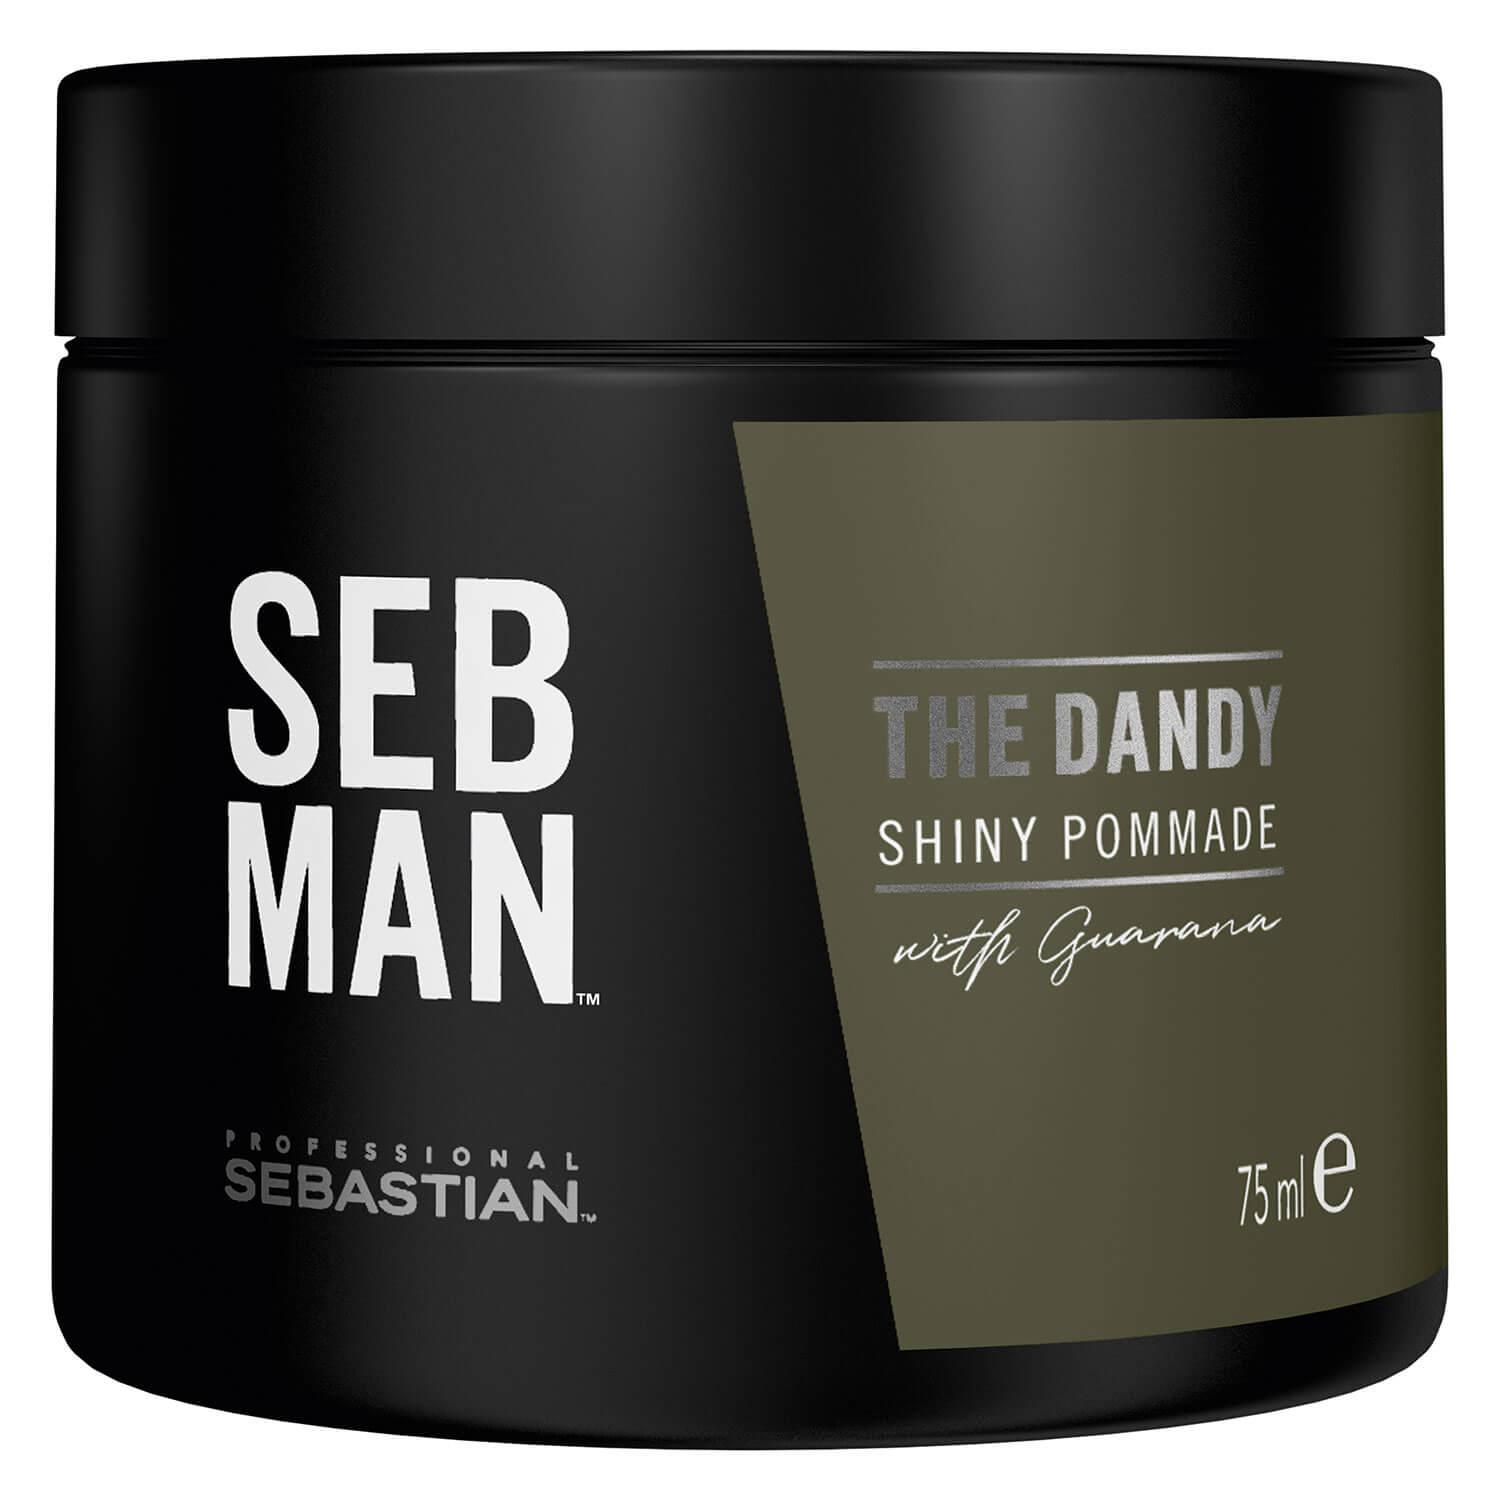 SEB MAN - The Dandy Shiny Pomade